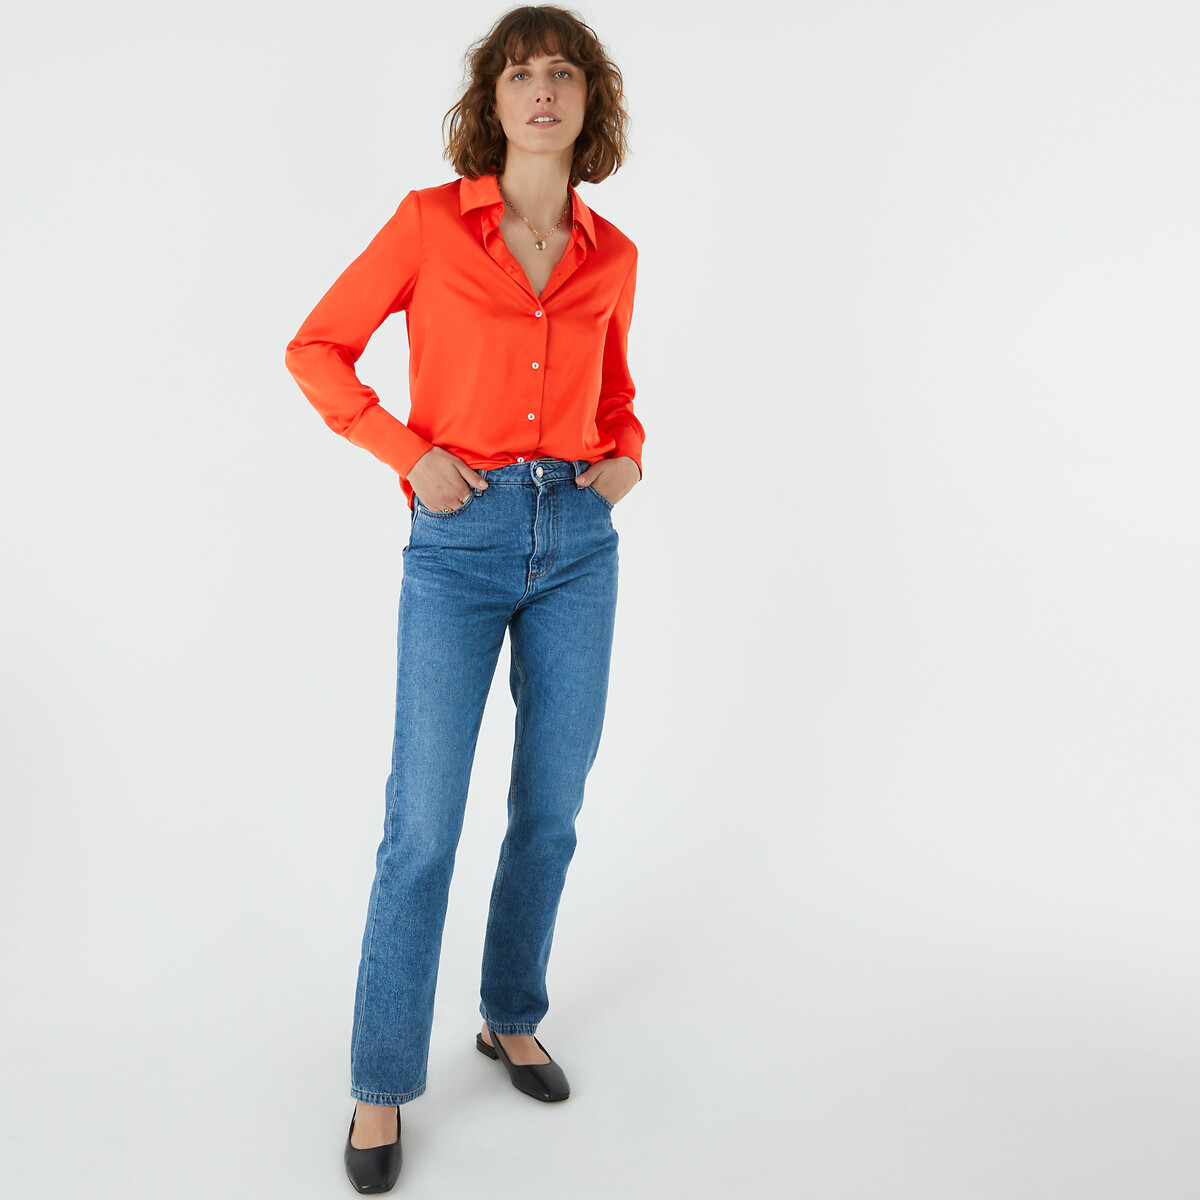 Рубашка с длинными рукавами  34 (FR) - 40 (RUS) оранжевый LaRedoute, размер 34 (FR) - 40 (RUS) Рубашка с длинными рукавами  34 (FR) - 40 (RUS) оранжевый - фото 2